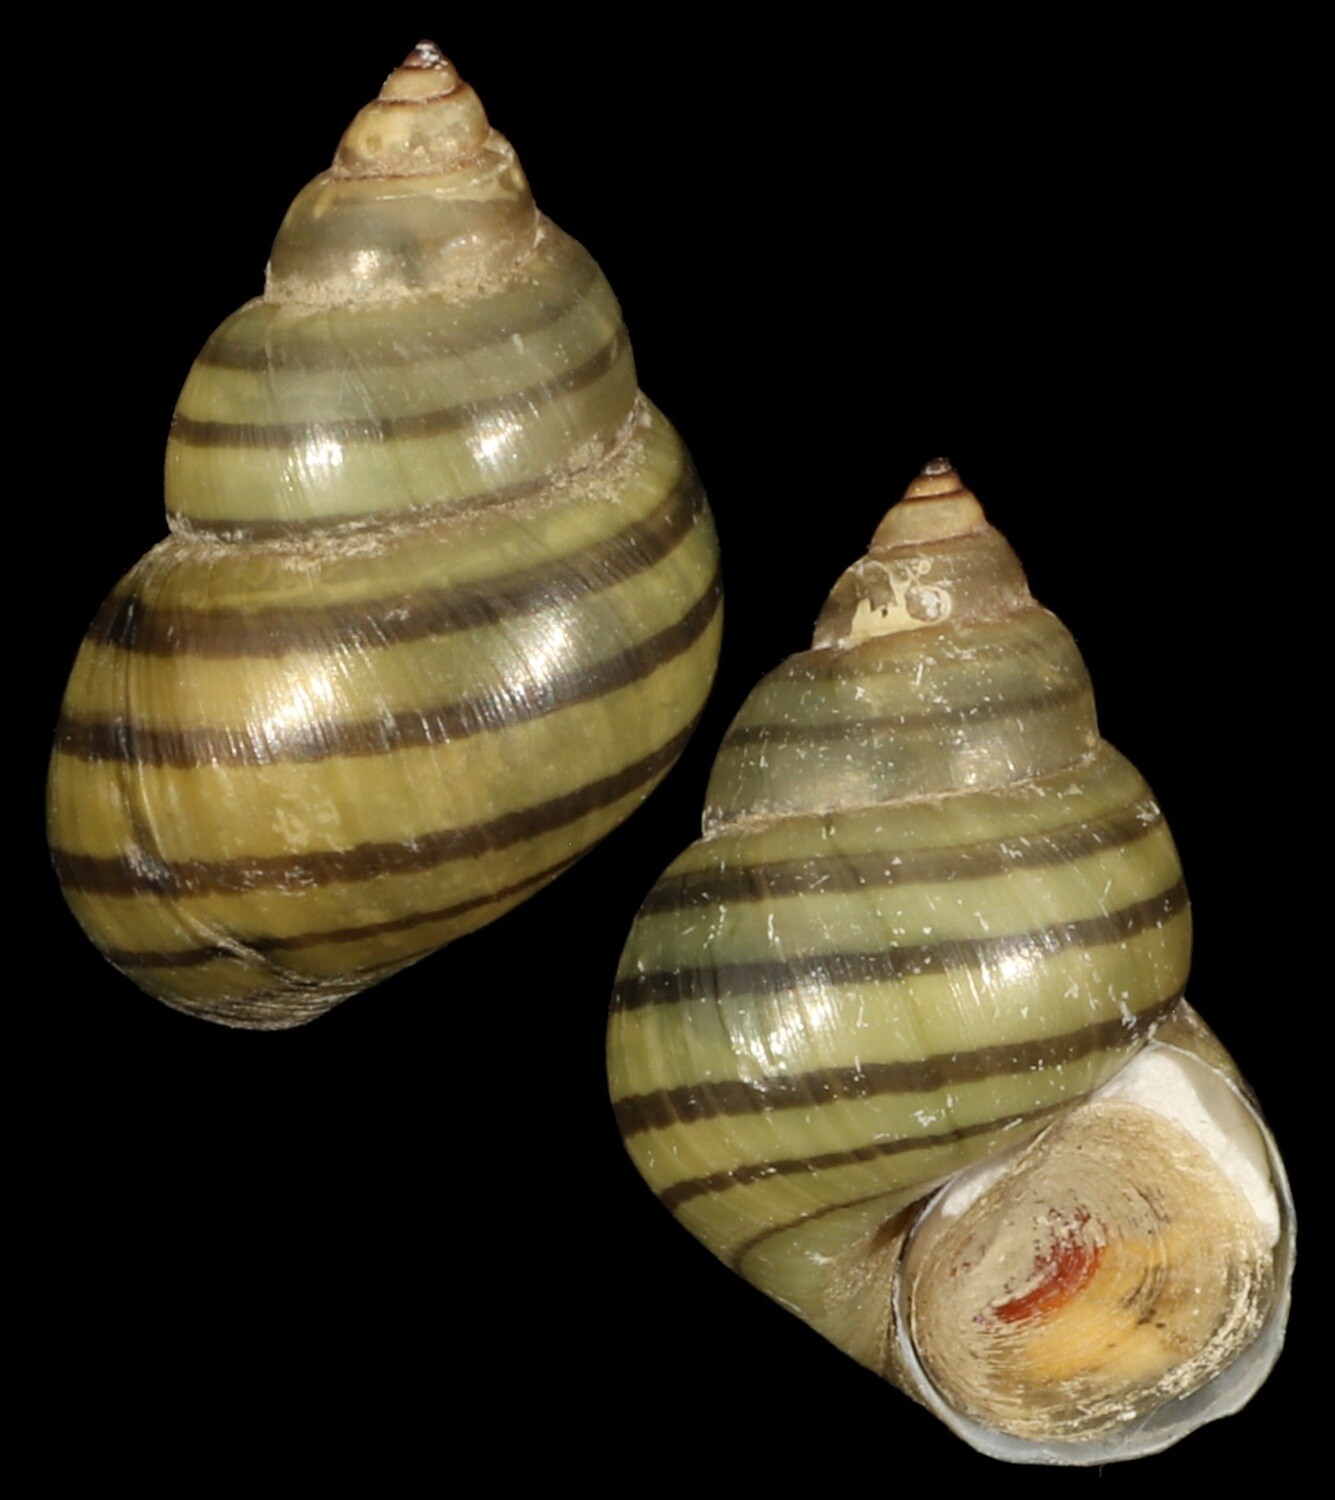 Filopaludina bengalensis